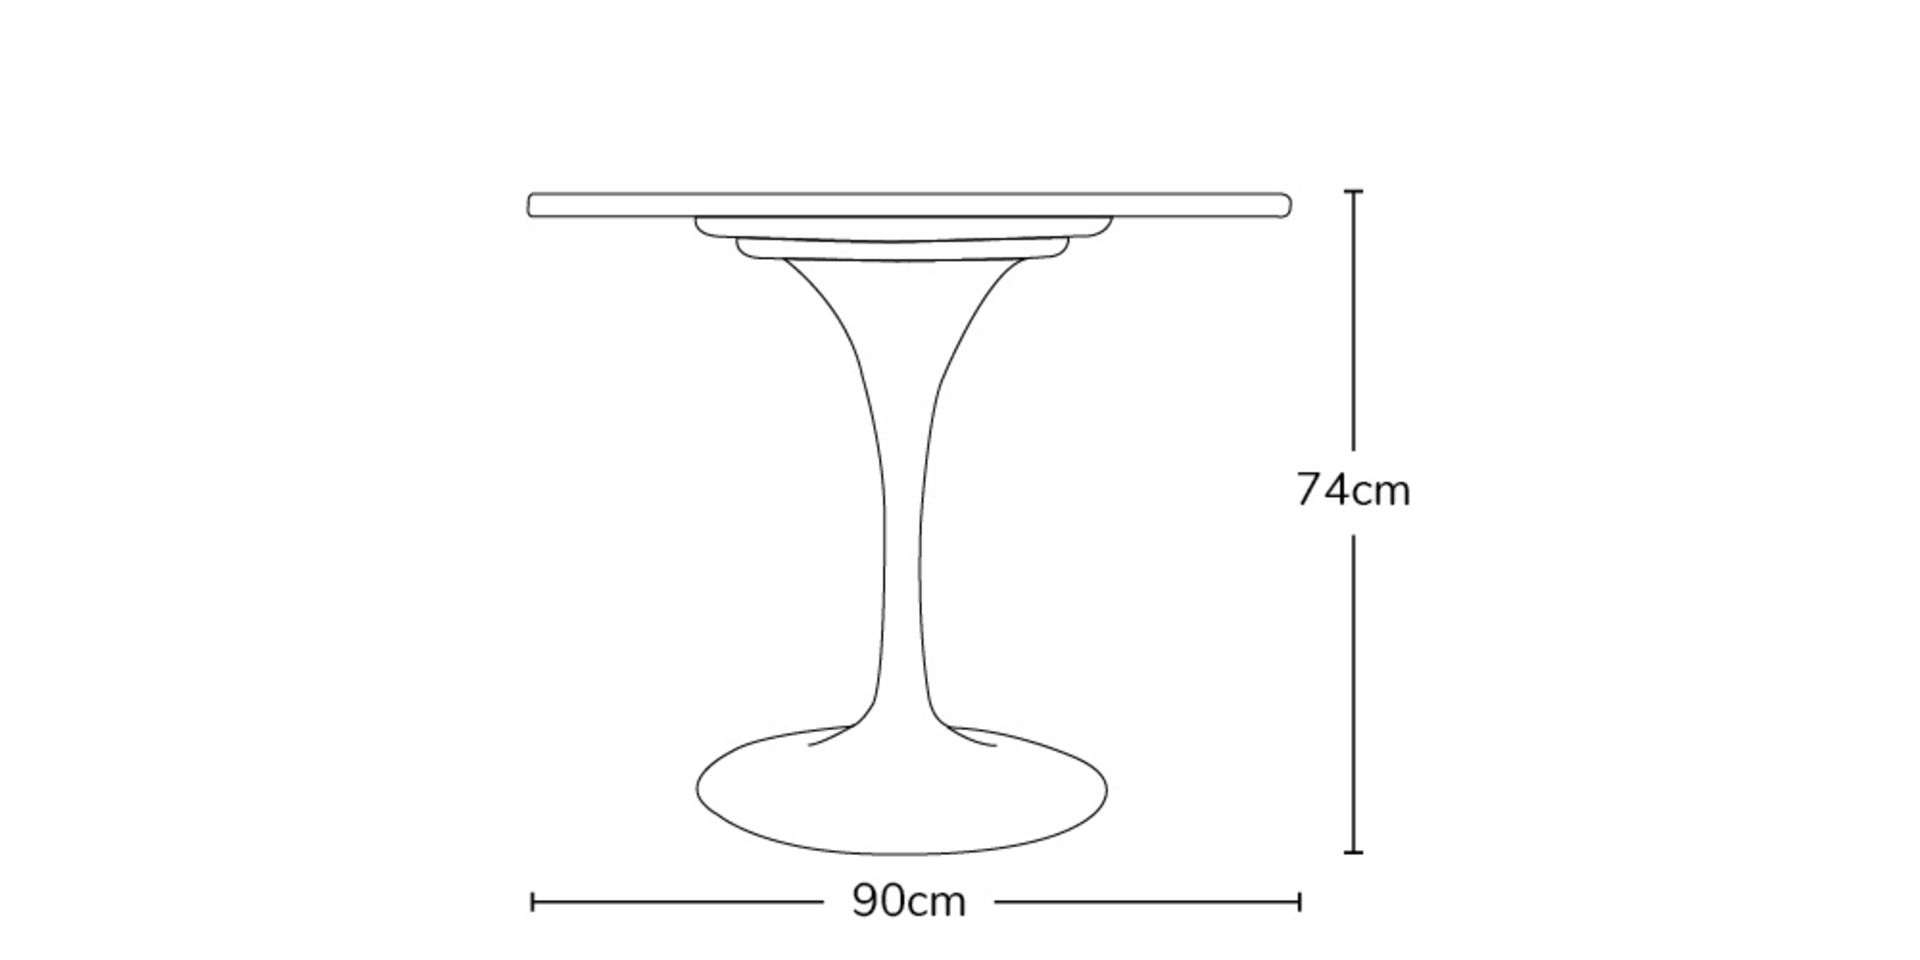 Tulip Eero Saarinen Inspired Table, 90cm - NEW - Image 5 of 9